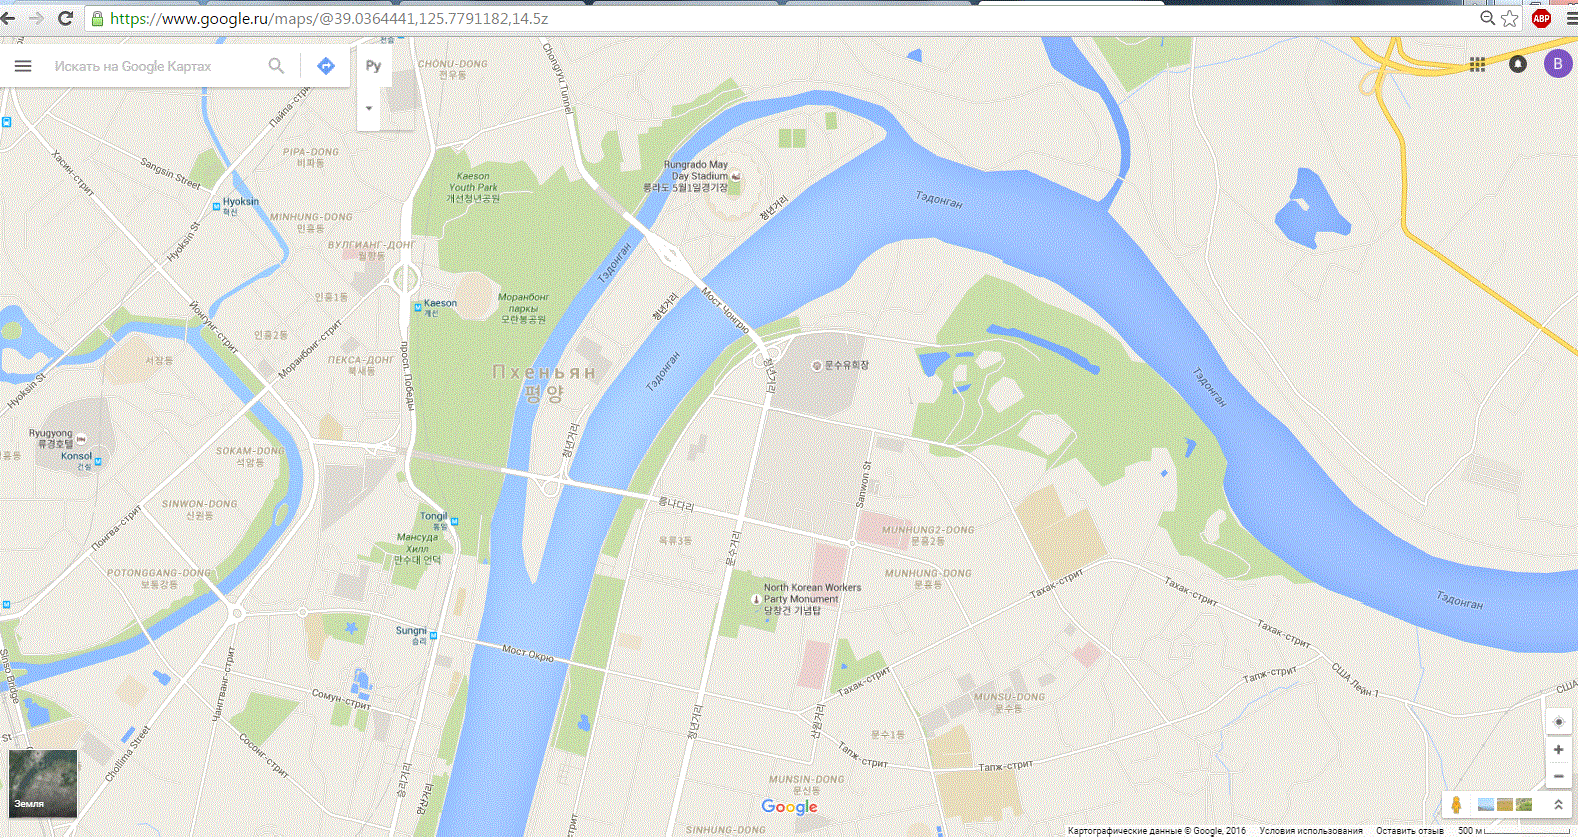 Гугл карты. Гуй карта. Карта Москвы Google Maps. Карта Москвы гугл карты.